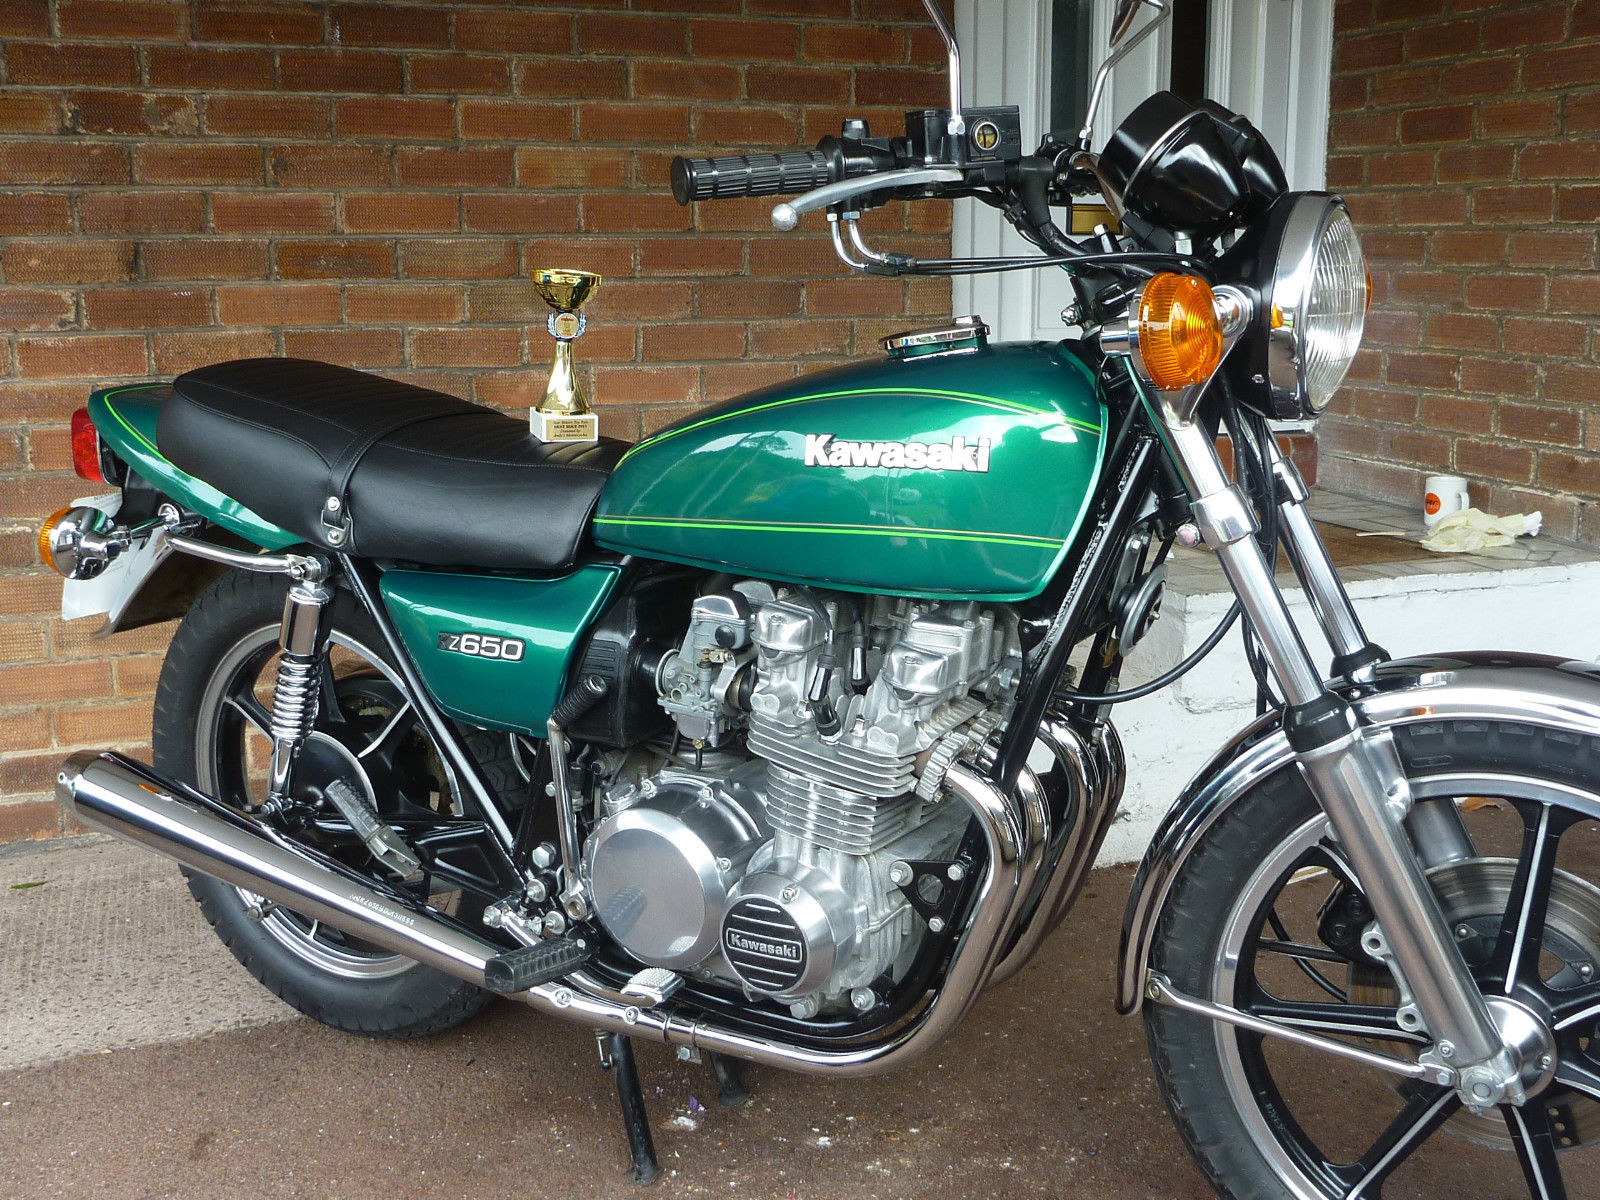 Restored Kawasaki Z650 1980 Photographs at Classic Bikes Restored |Bikes Restored